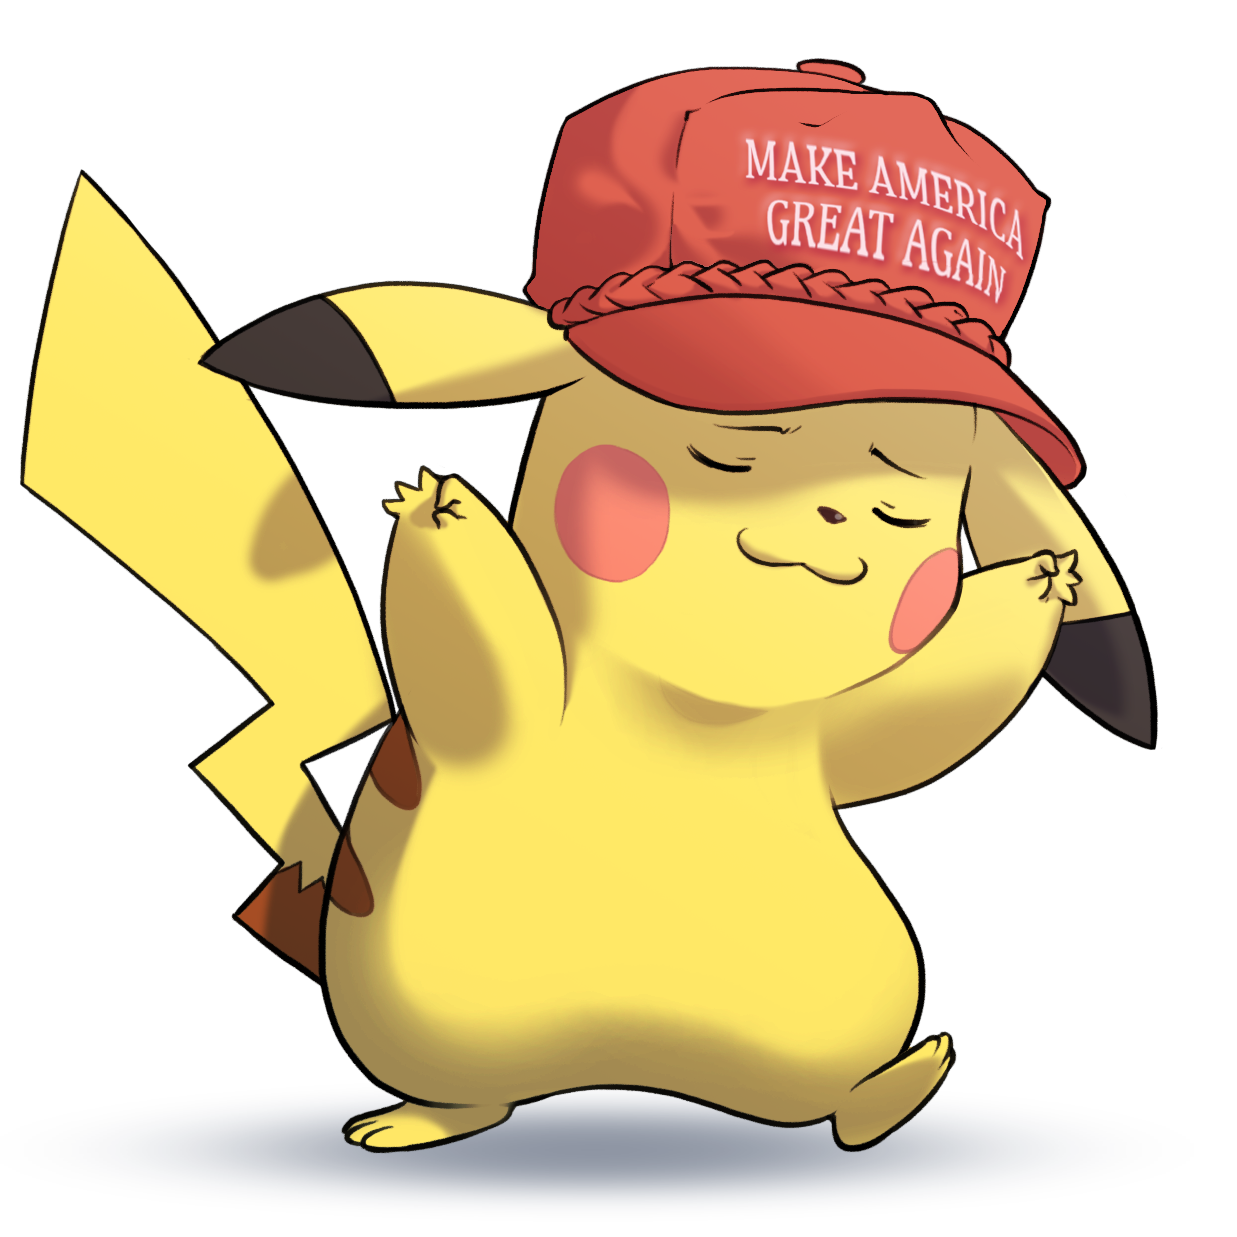 pikachu clipart hat transparent